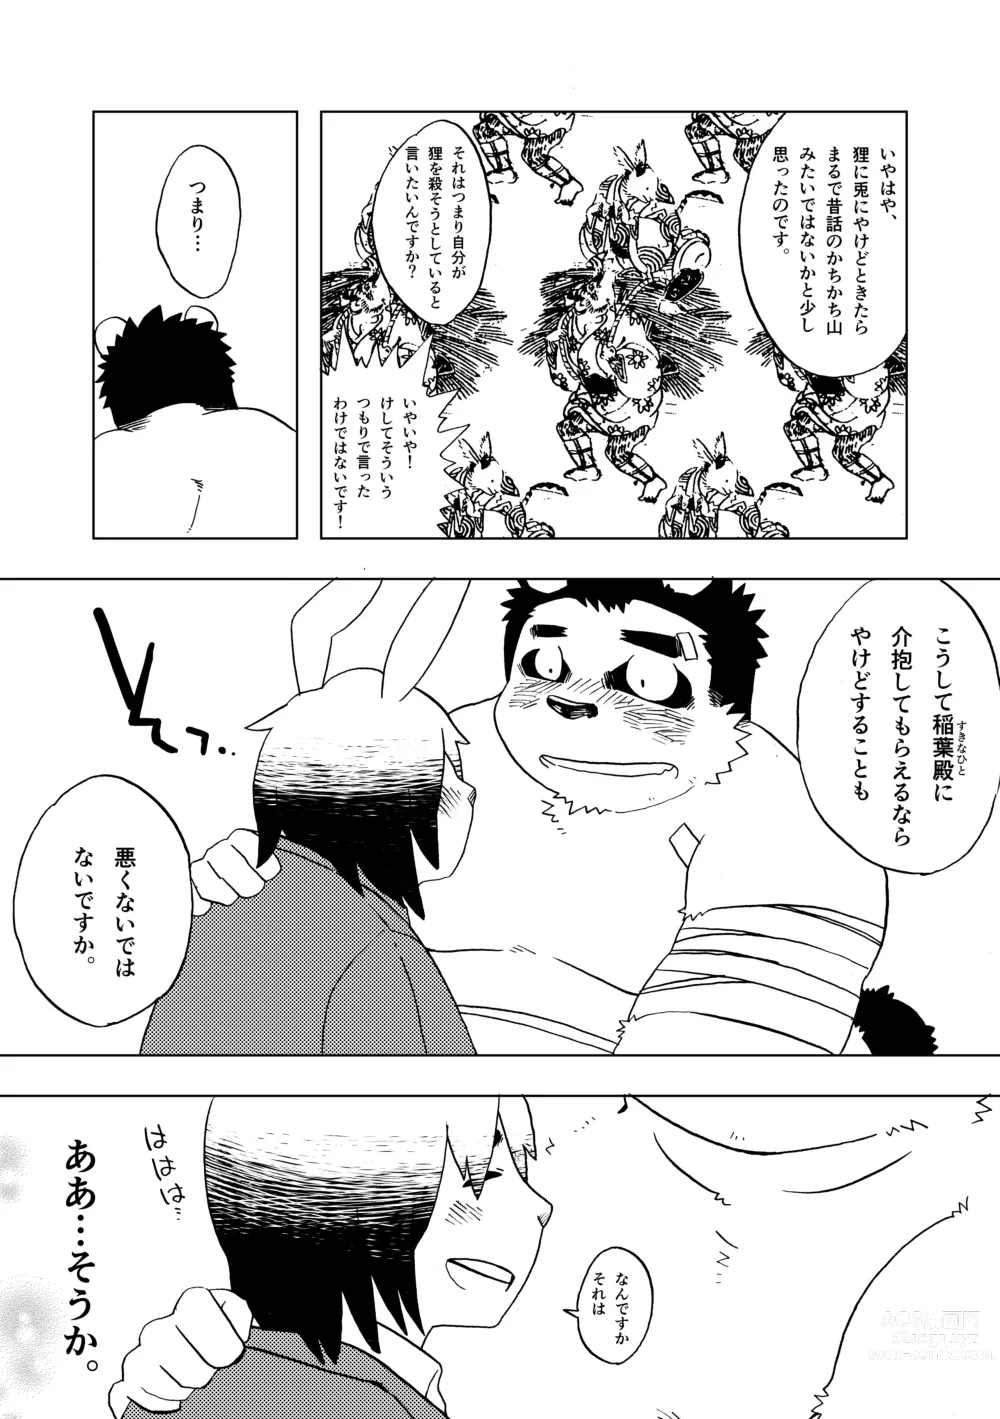 Page 10 of doujinshi - Isetsu Nihon kaiko hanashi kachikachiyama -